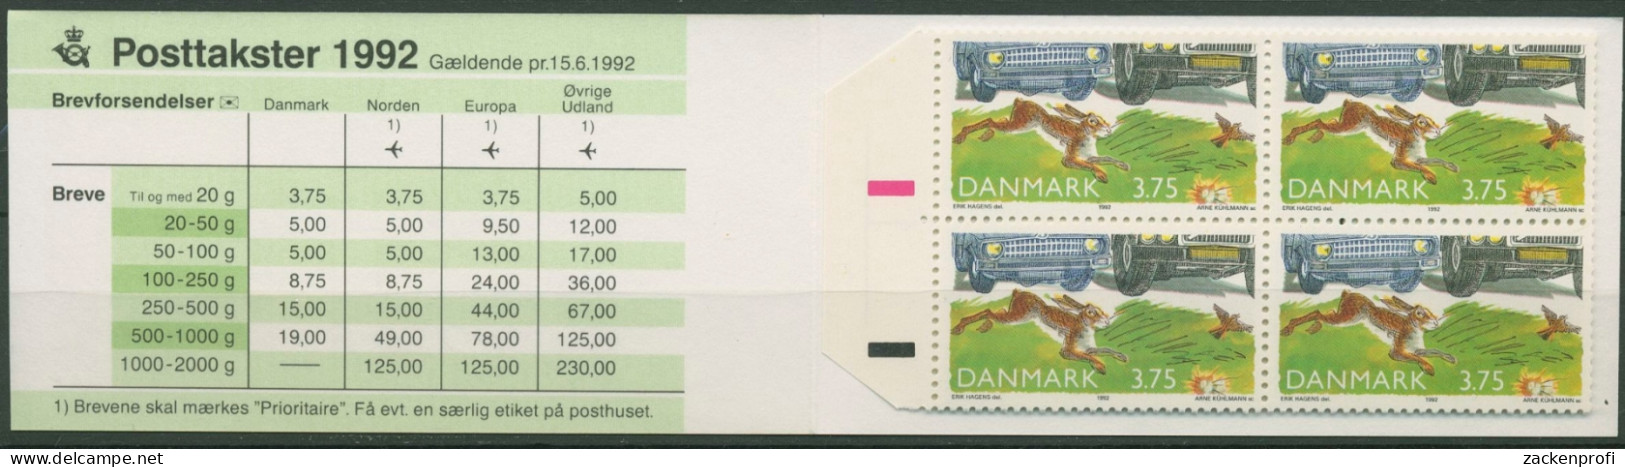 Dänemark 1992 Straßenverkehr Feldhase Markenheftchen 1032 MH Postfrisch (C93043) - Markenheftchen